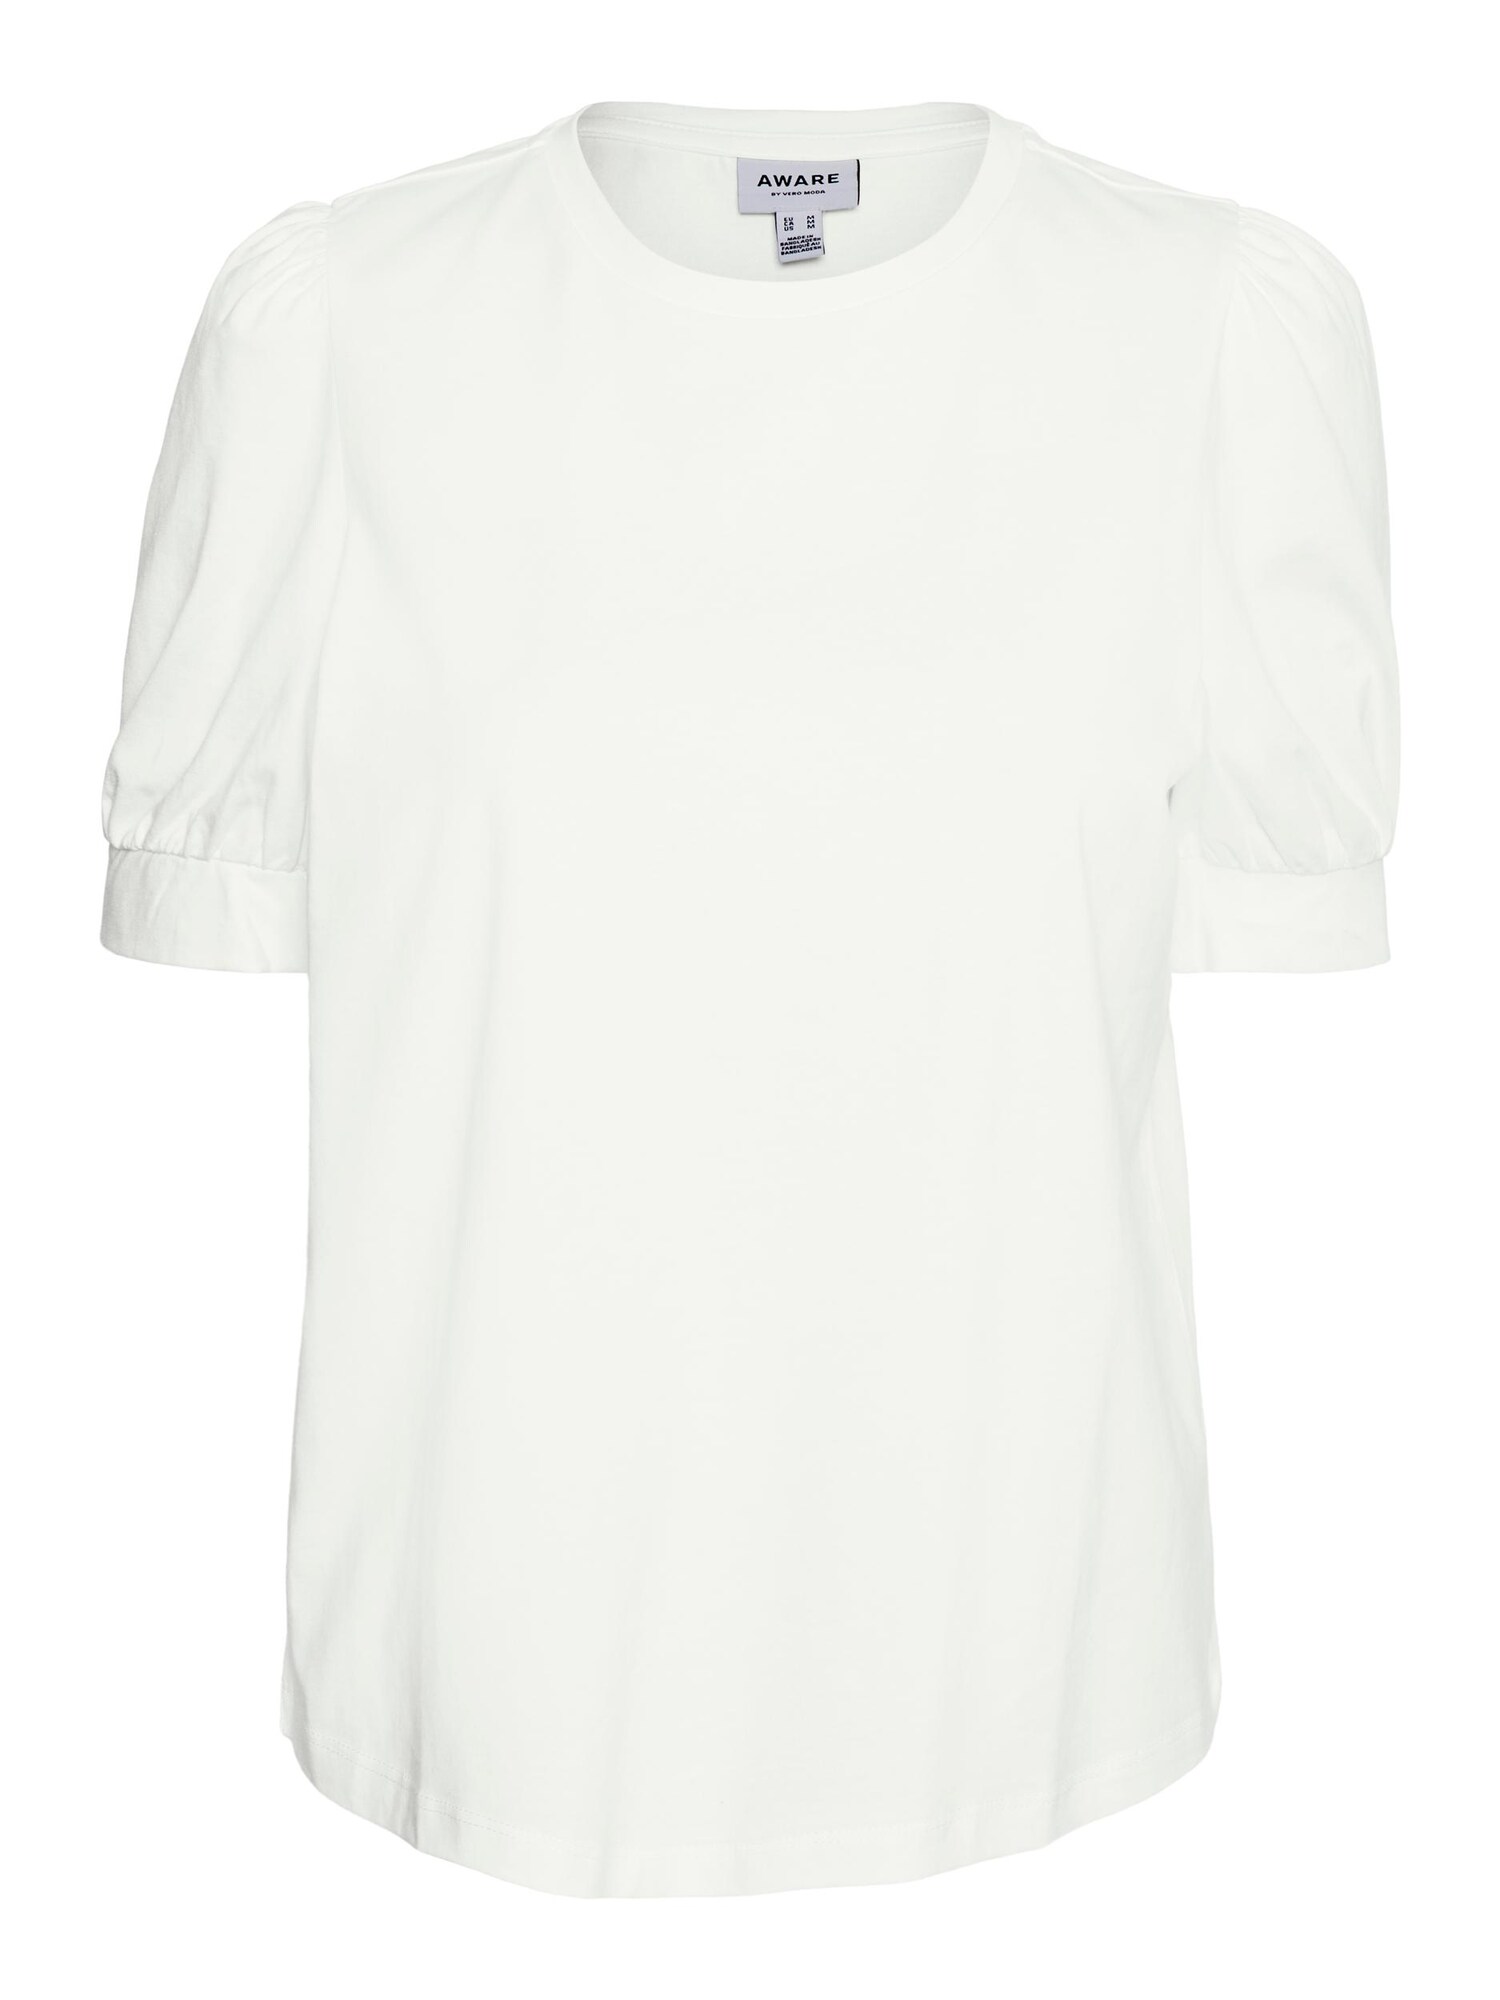 T-Shirt 'Kerry' von Vero Moda